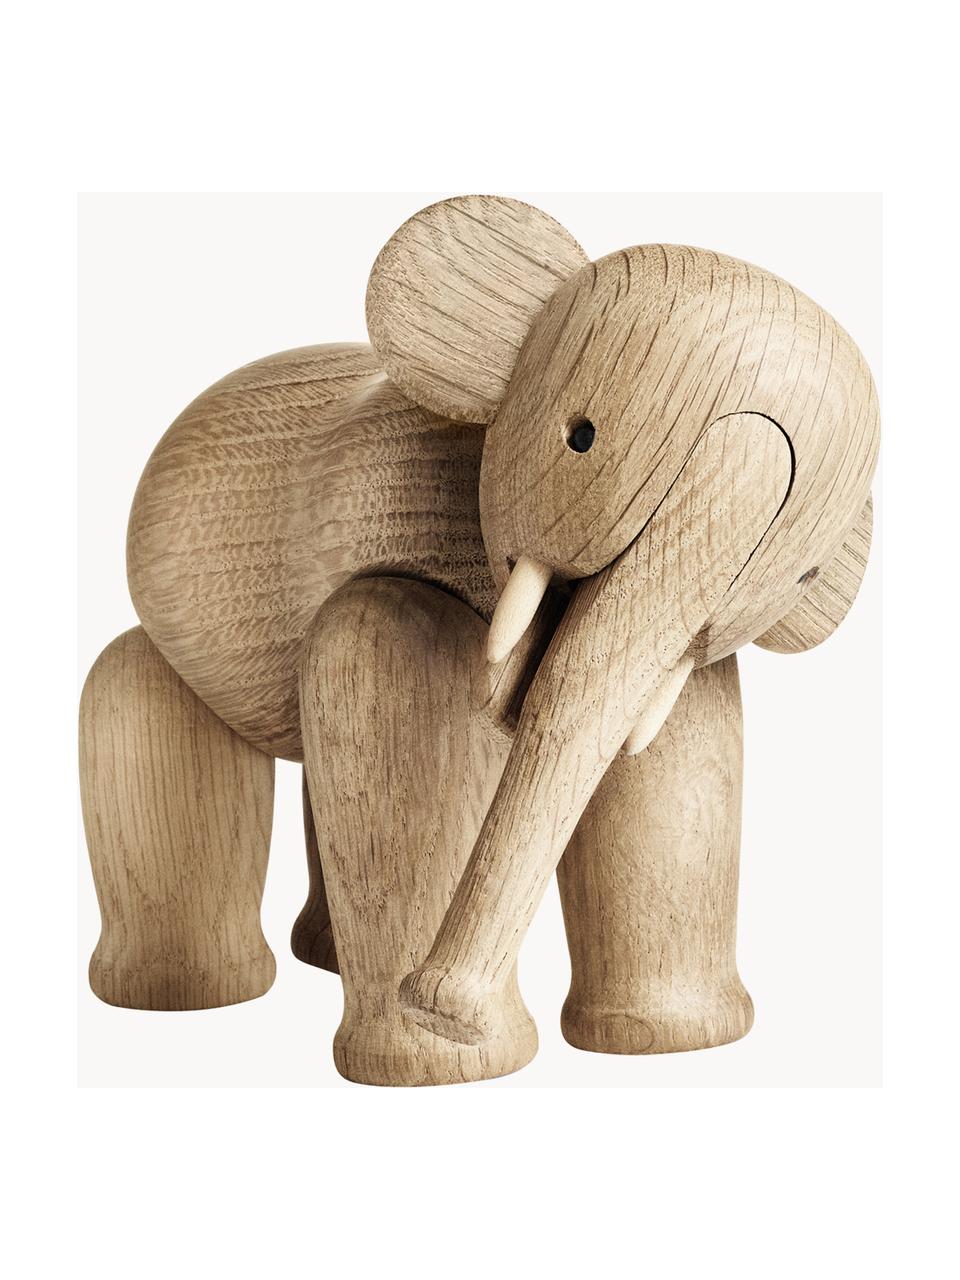 Handgefertigtes Deko-Objekt Elephant aus Eichenholz, Eichenholz, lackiert, Eichenholz, B 17 x H 13 cm